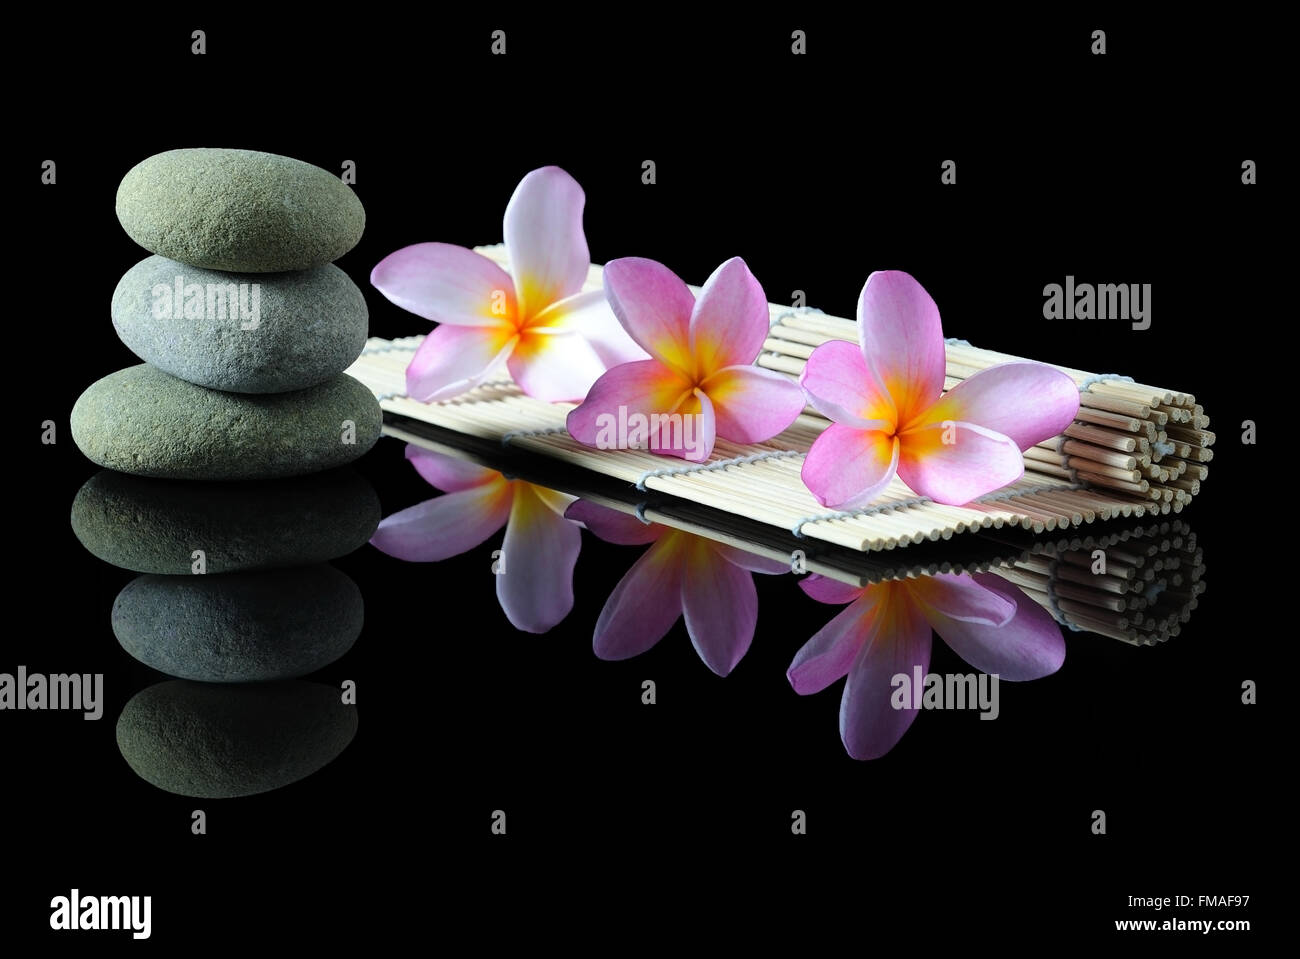 Spa, beauté et bien-être concept - pierres Zen empilées Frangipani flowers sur un tapis de bambou avec réflexion, fond noir. Banque D'Images